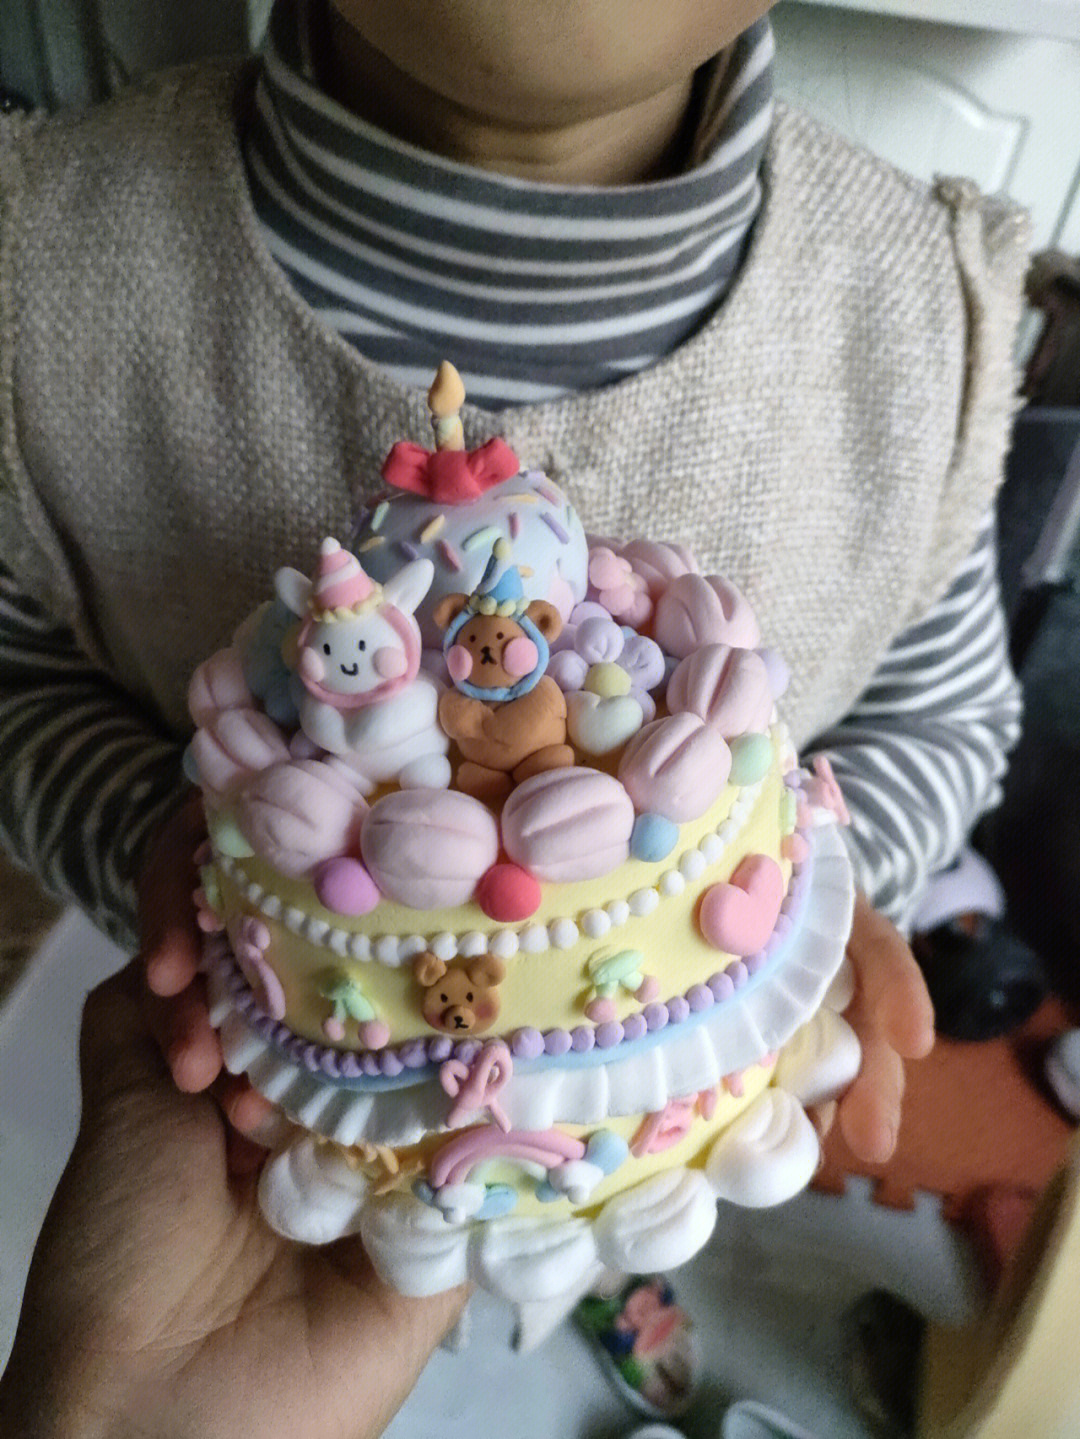 给柚子生日做了一个不会融化的粘土蛋糕祝她明天生日快乐哦